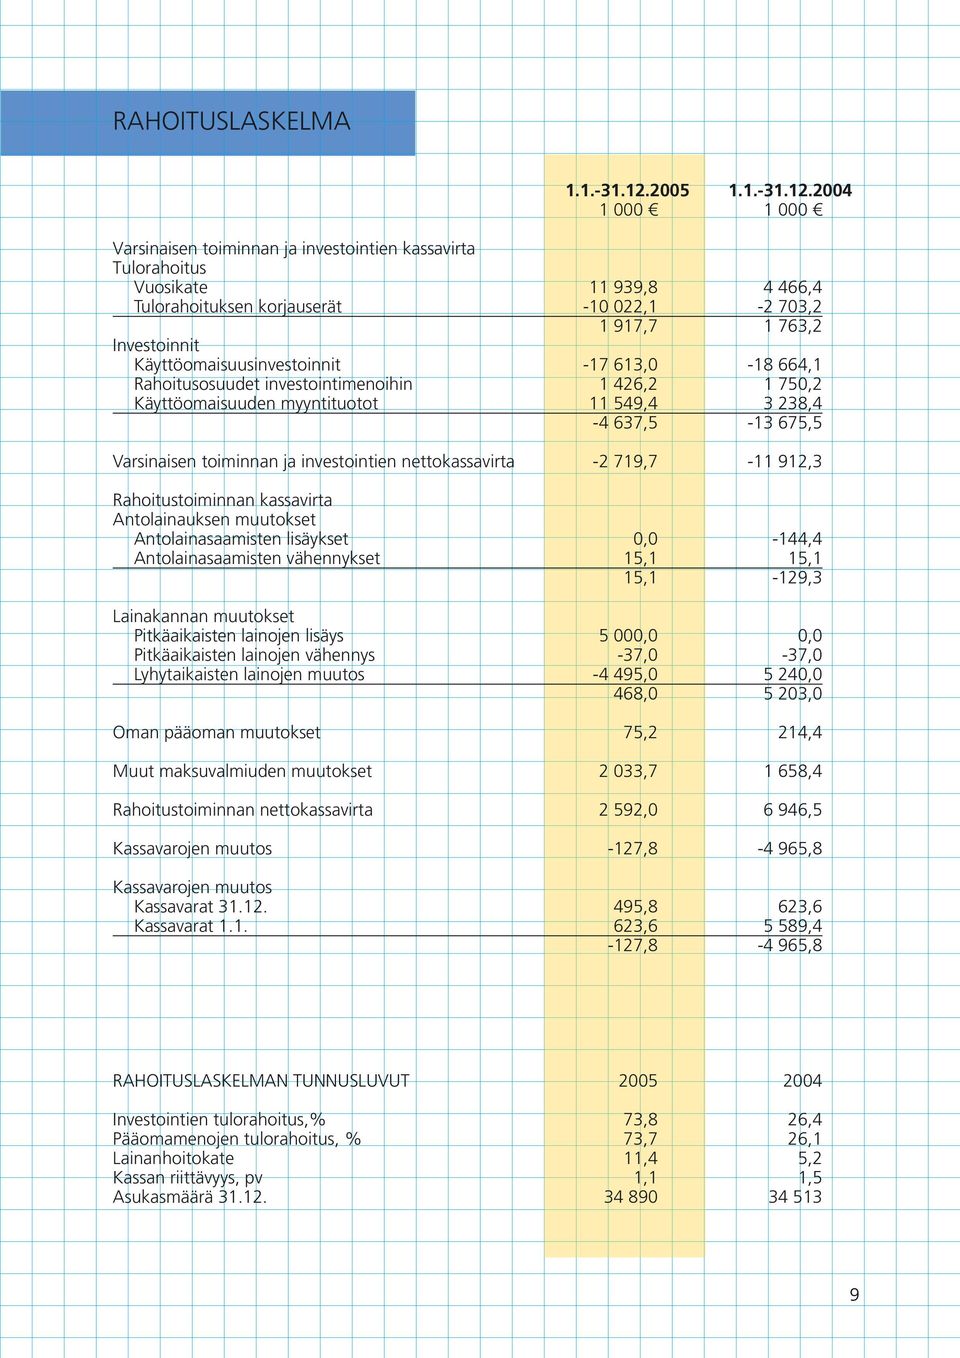 2004 1 000 000 Varsinaisen toiminnan ja investointien kassavirta Tulorahoitus Vuosikate 939,8 4 466,4 Tulorahoituksen korjauserät -10 022, -2 703,2 1 917,7 763, Investoinnit